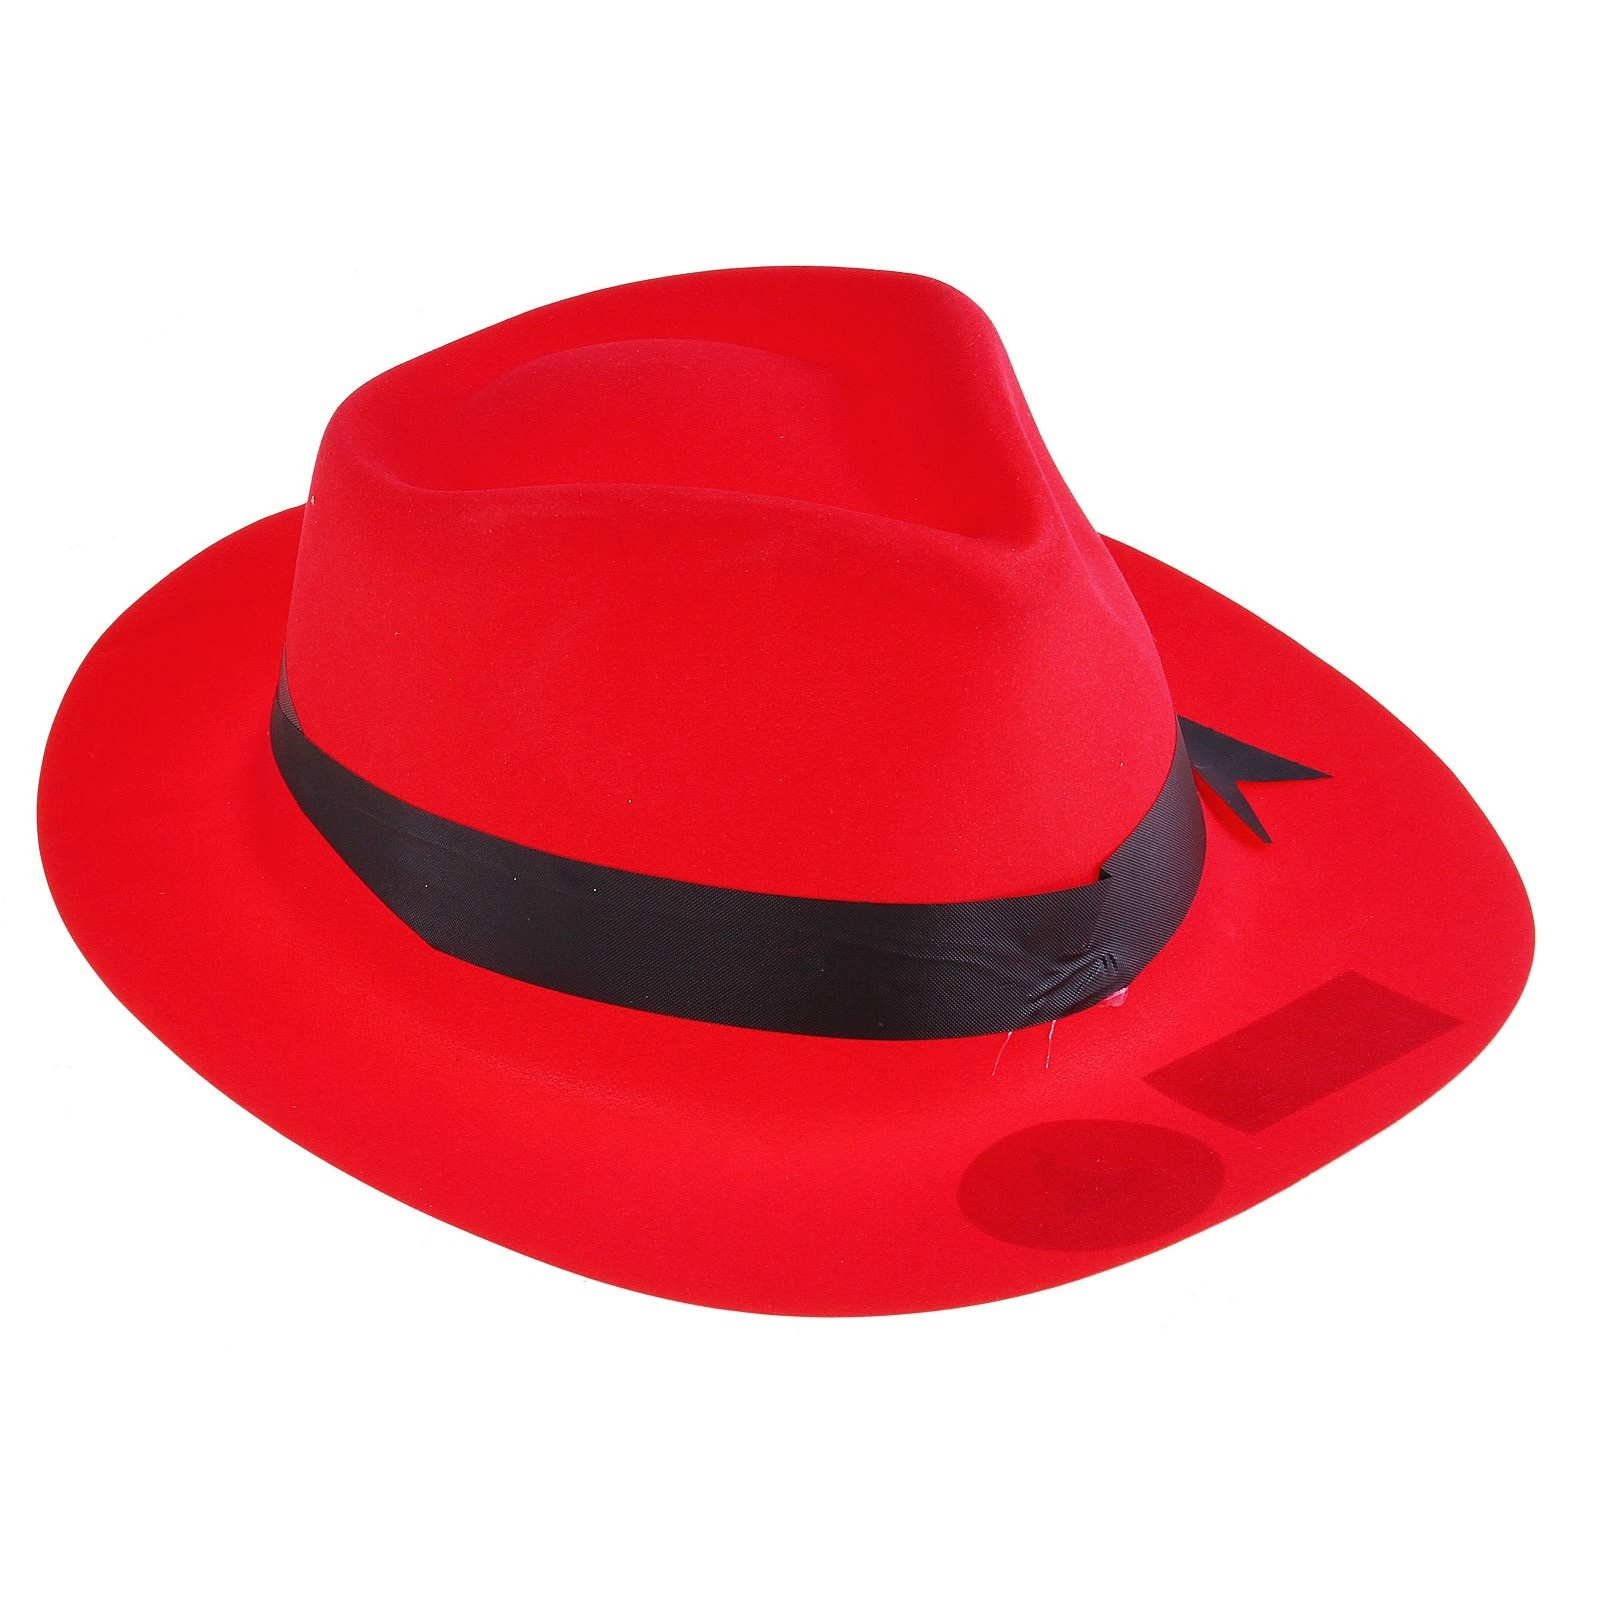 Шляпа 325745 с кантом р.56 цвет: красная - Омск 